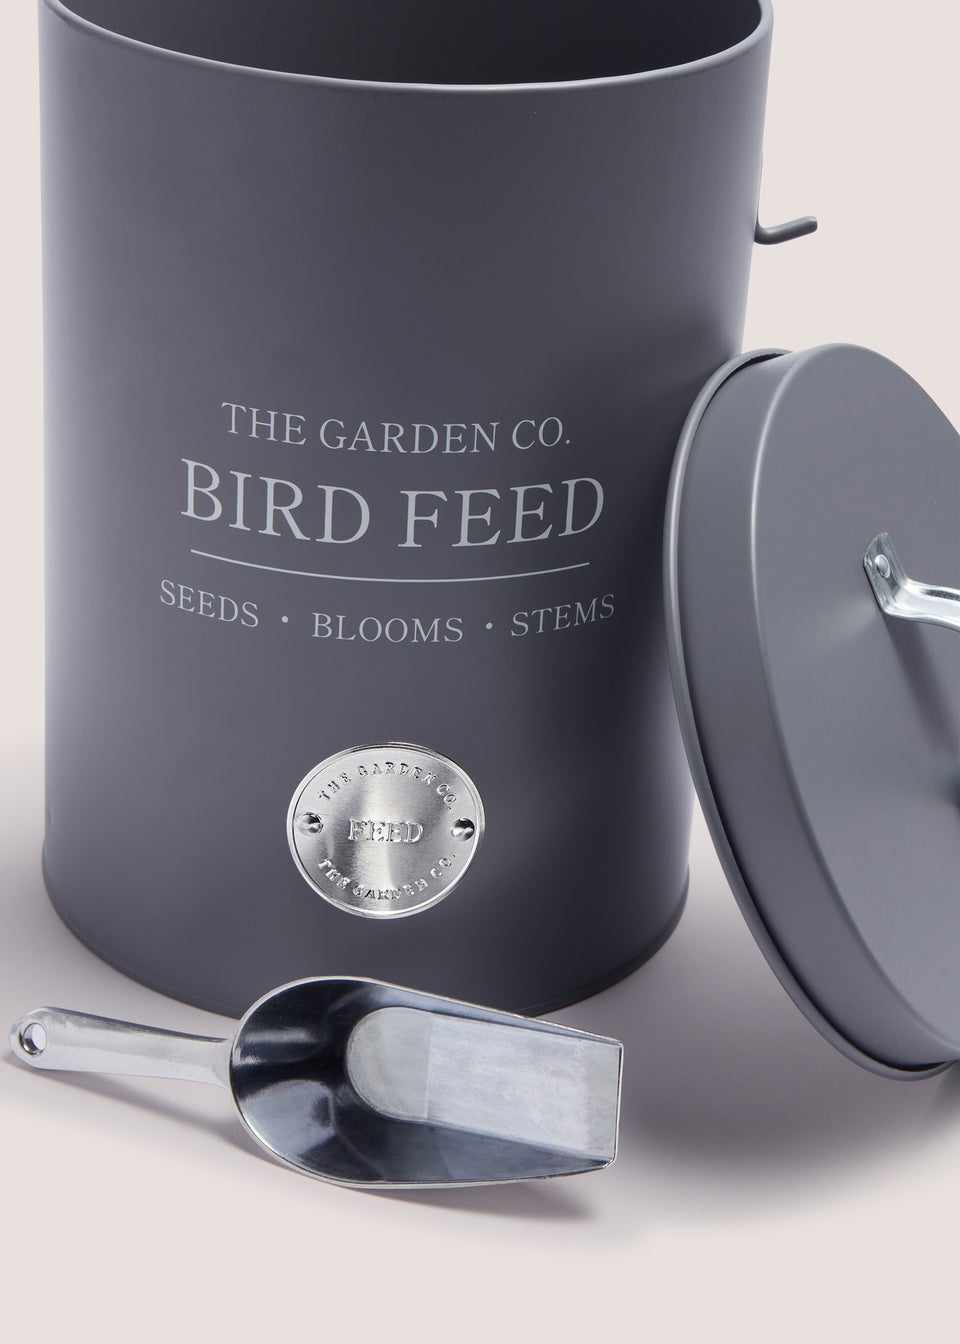 The Garden Co Grey Bird Feed Tin